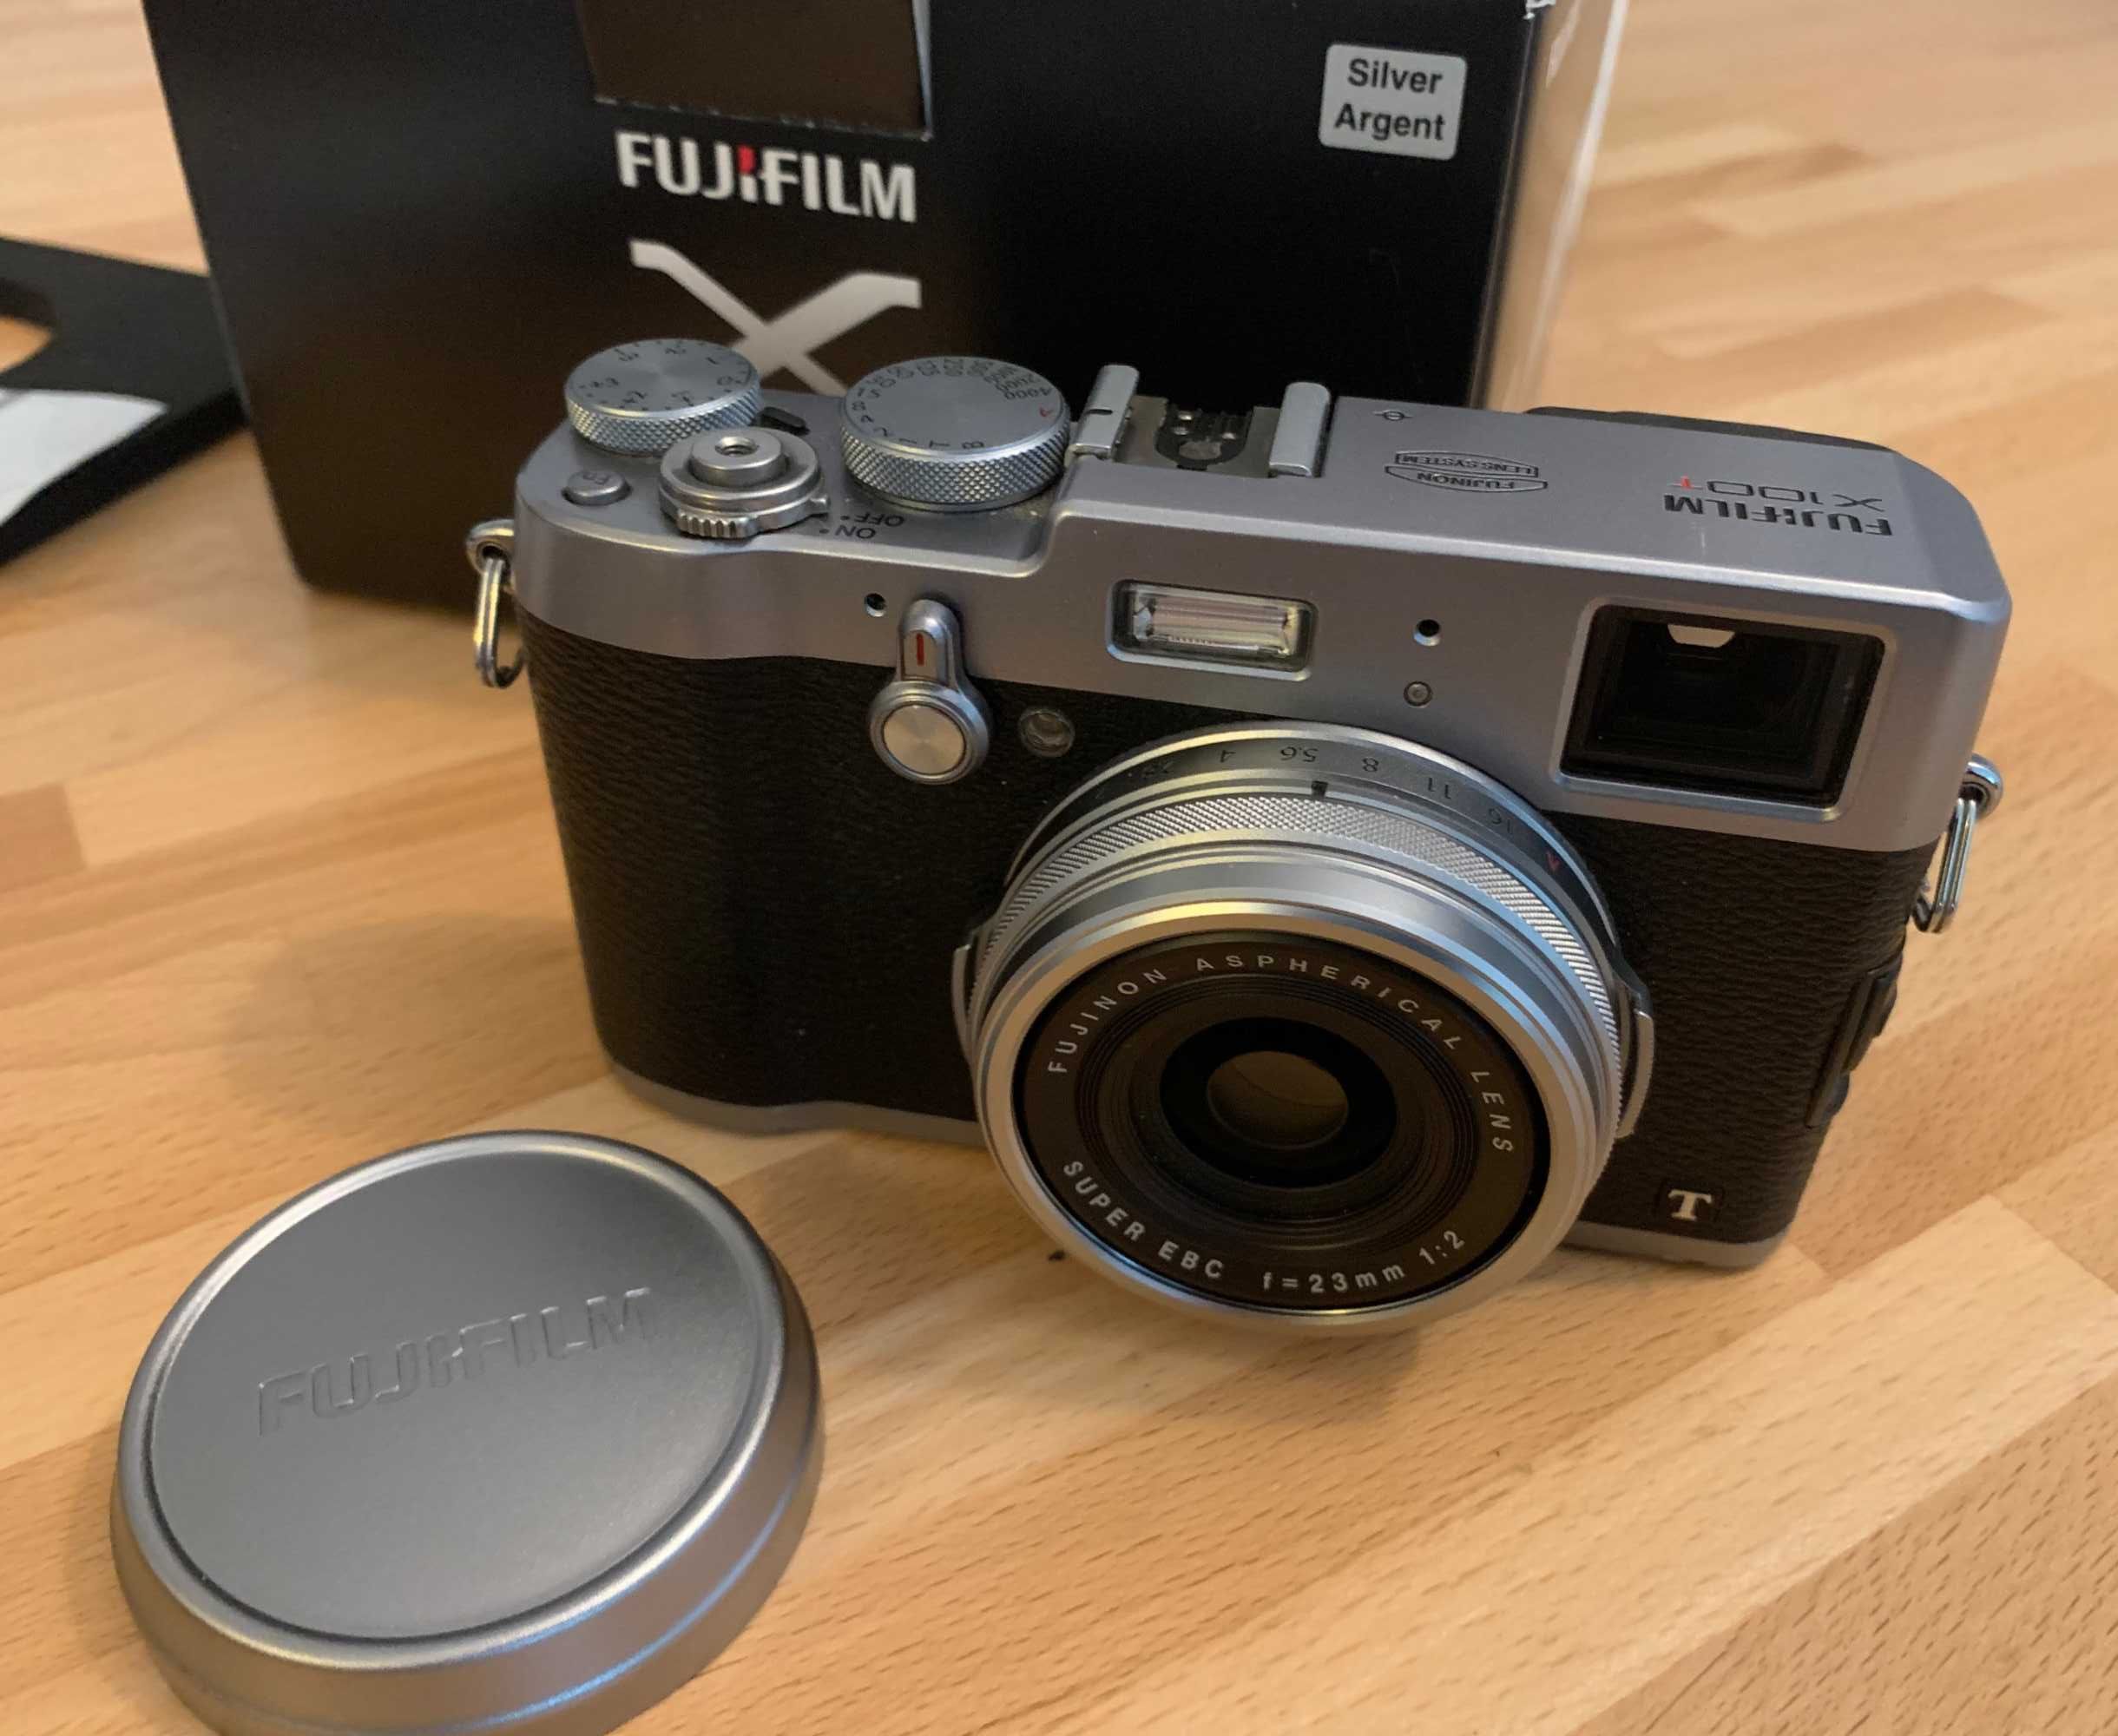 Fuji Fujifilm X-100T Prateada + acessórios extras, como novo (pack)